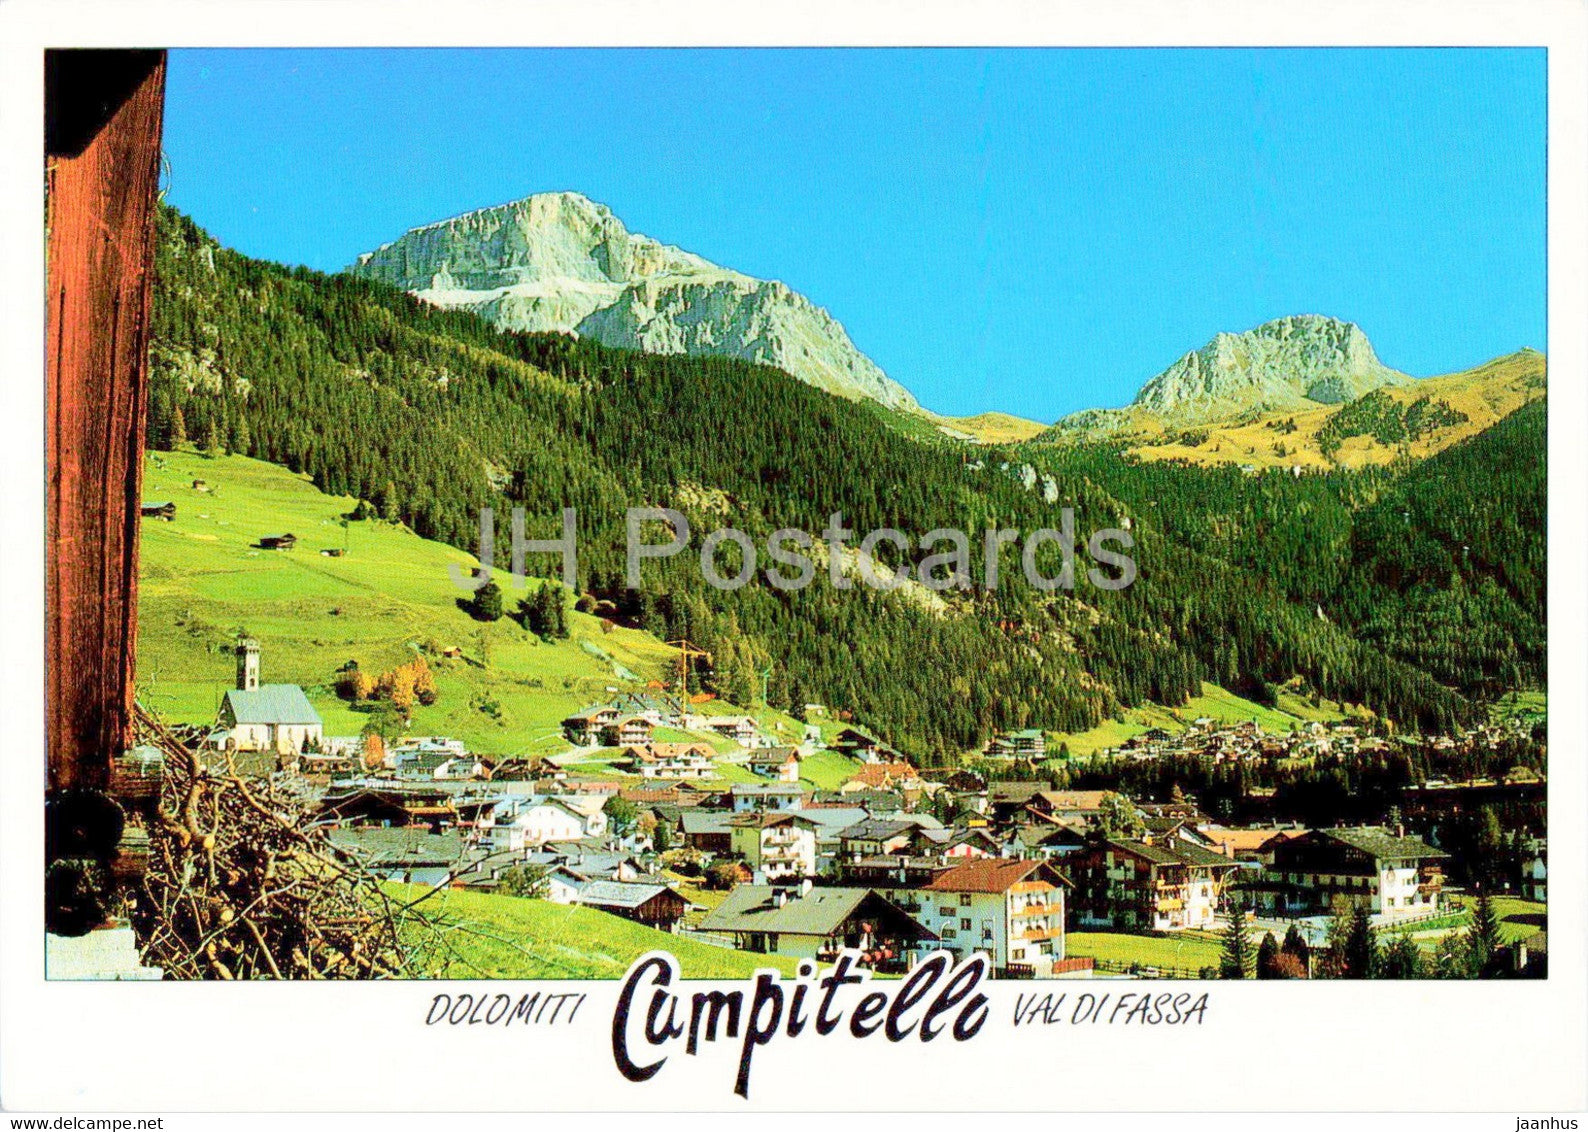 Campitello di Fassa - Dolomiti - Val di Fassa - Panorama verso il Sass Pordoi - Italy - unused - JH Postcards